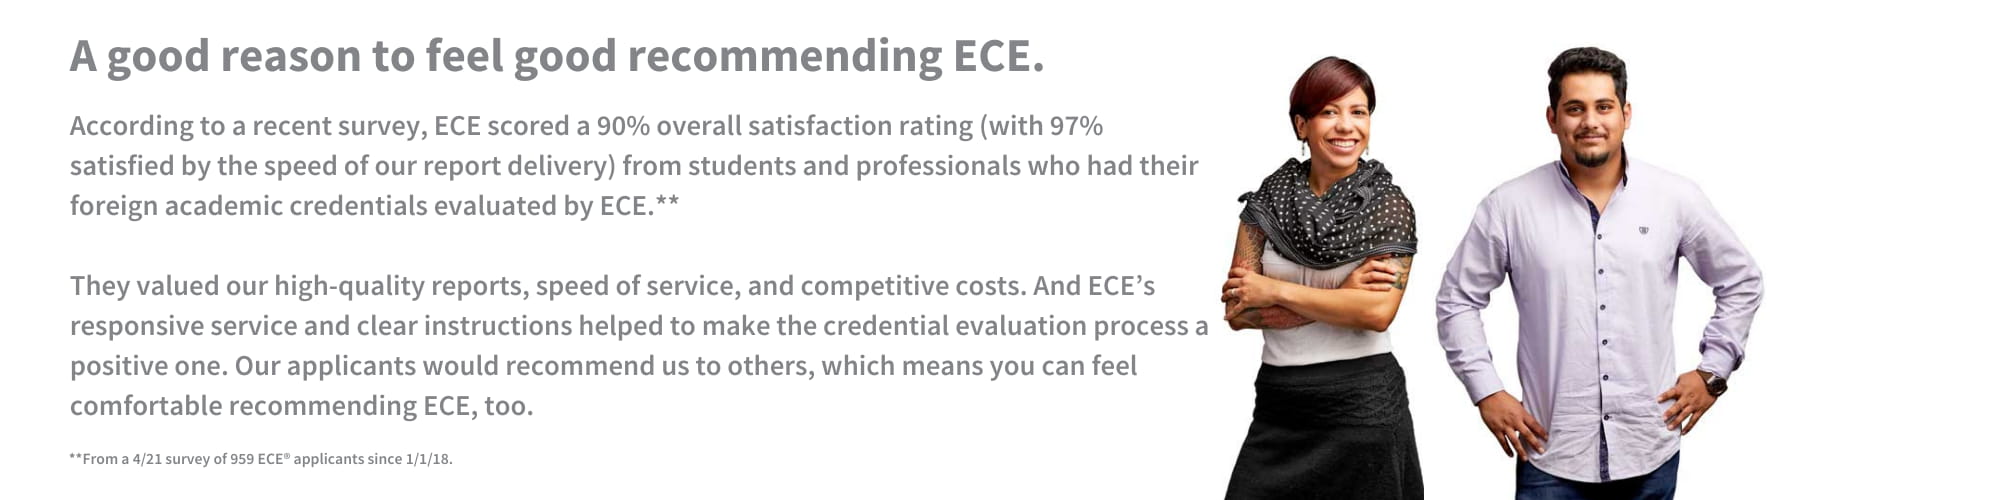 95 percent recommend ECE